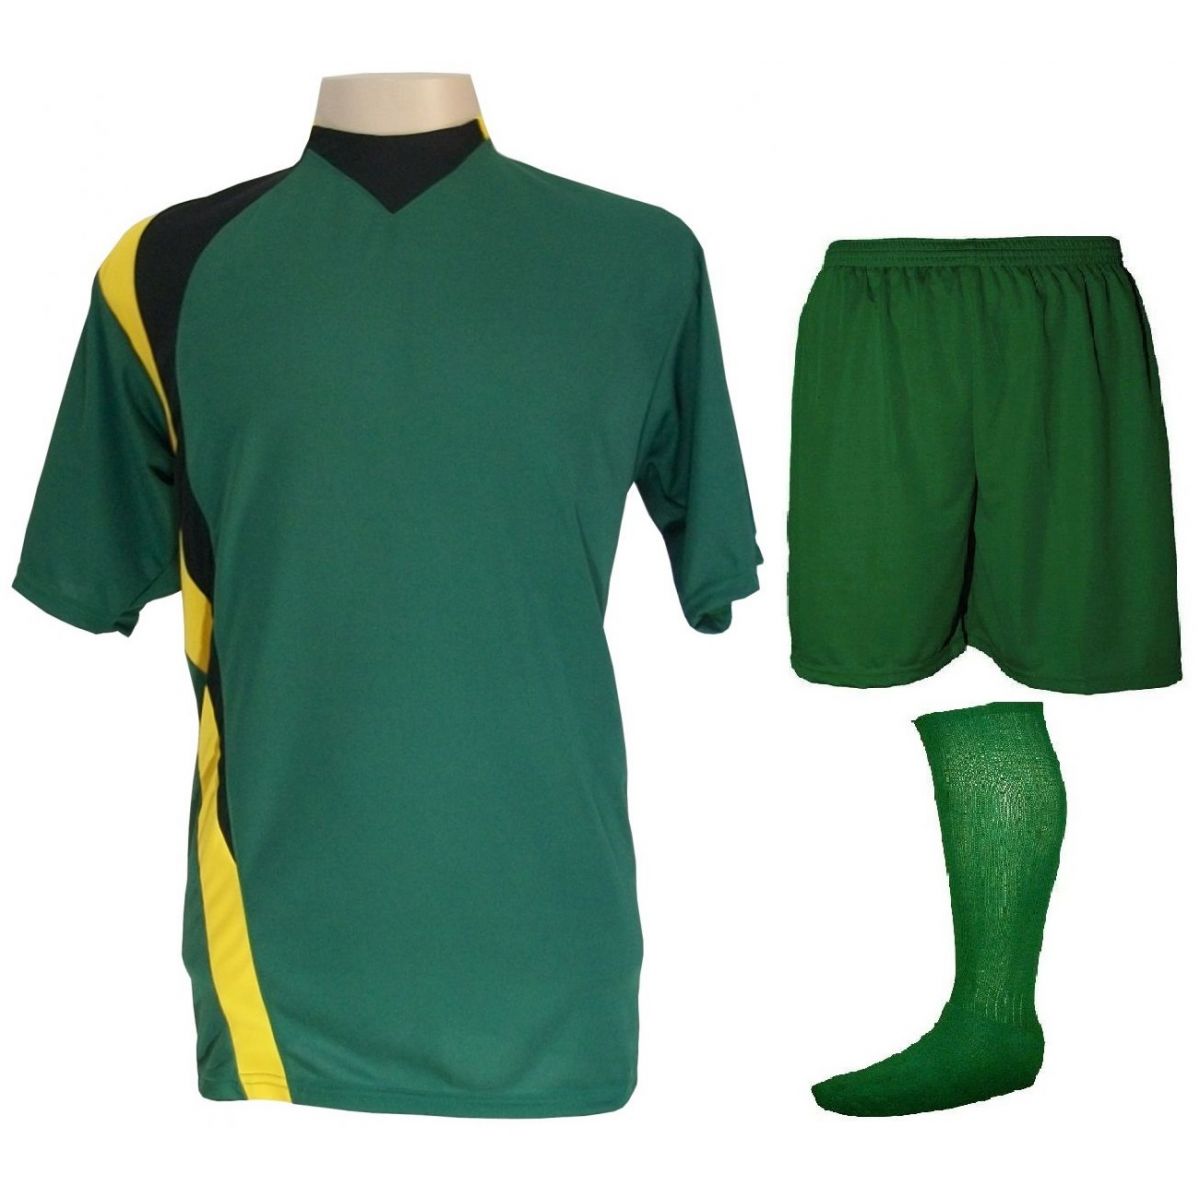 Uniforme Esportivo Completo modelo PSG 14+1 (14 camisas Verde/Preto/Amarelo + 14 calções Madrid Verde + 14 pares de meiões Verde + 1 conjunto de goleiro) + Brindes